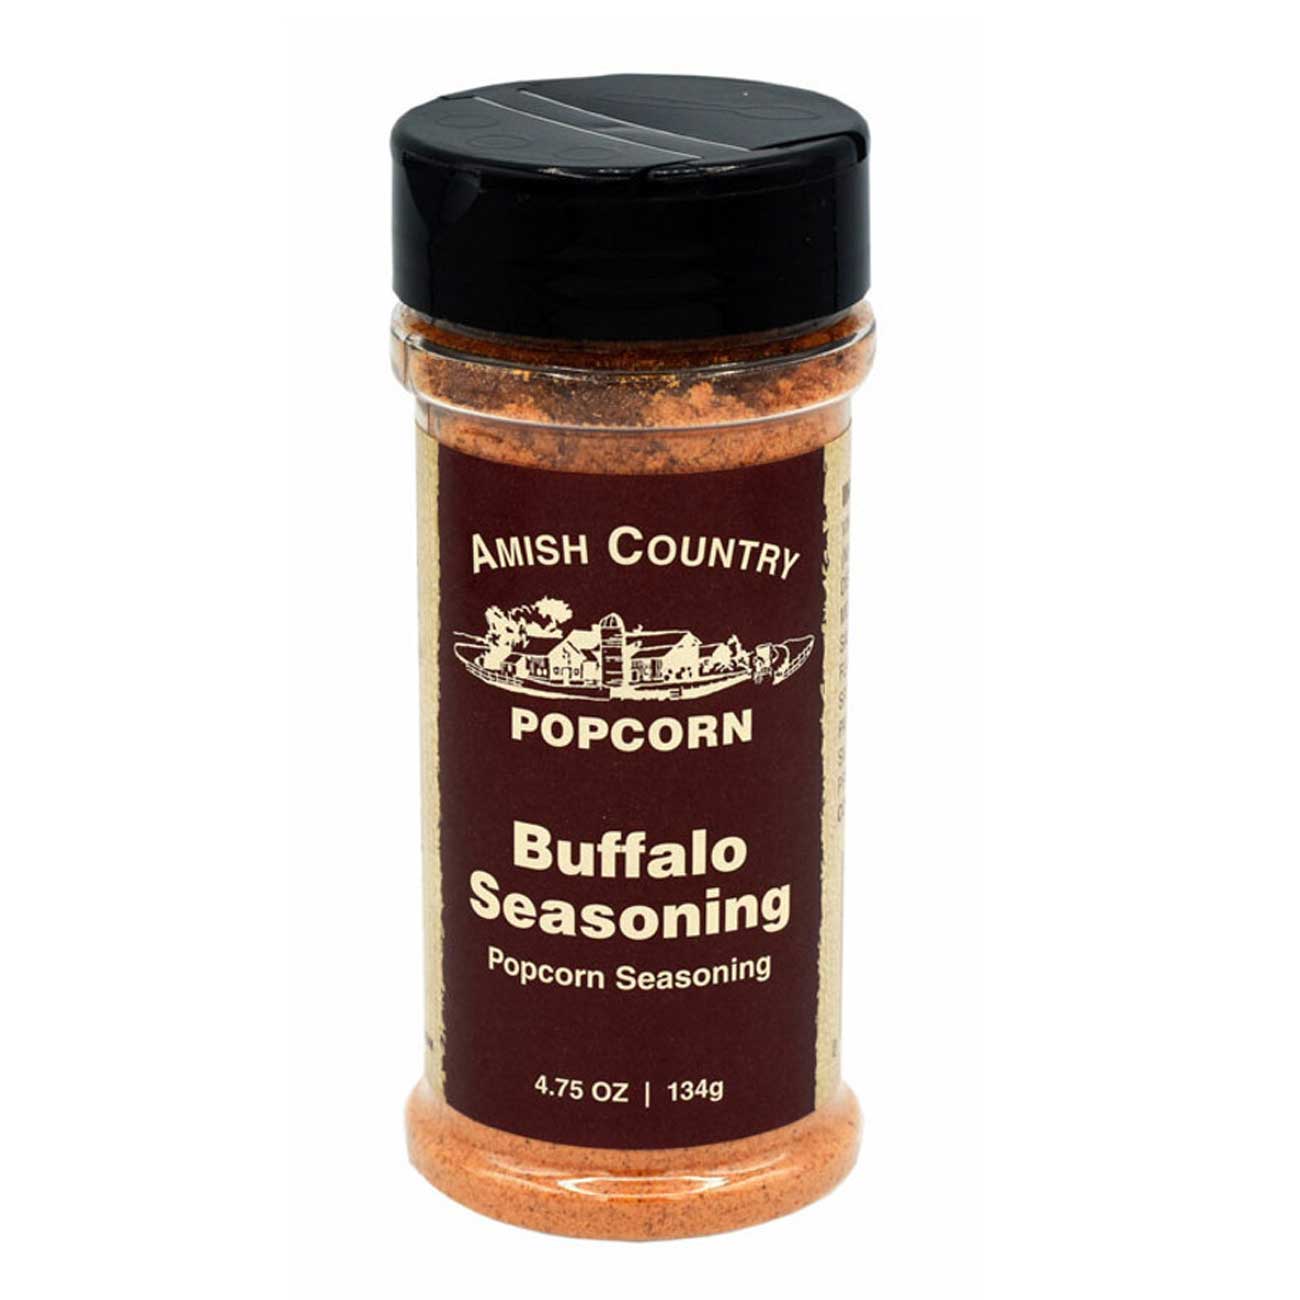 buffalo seasoning